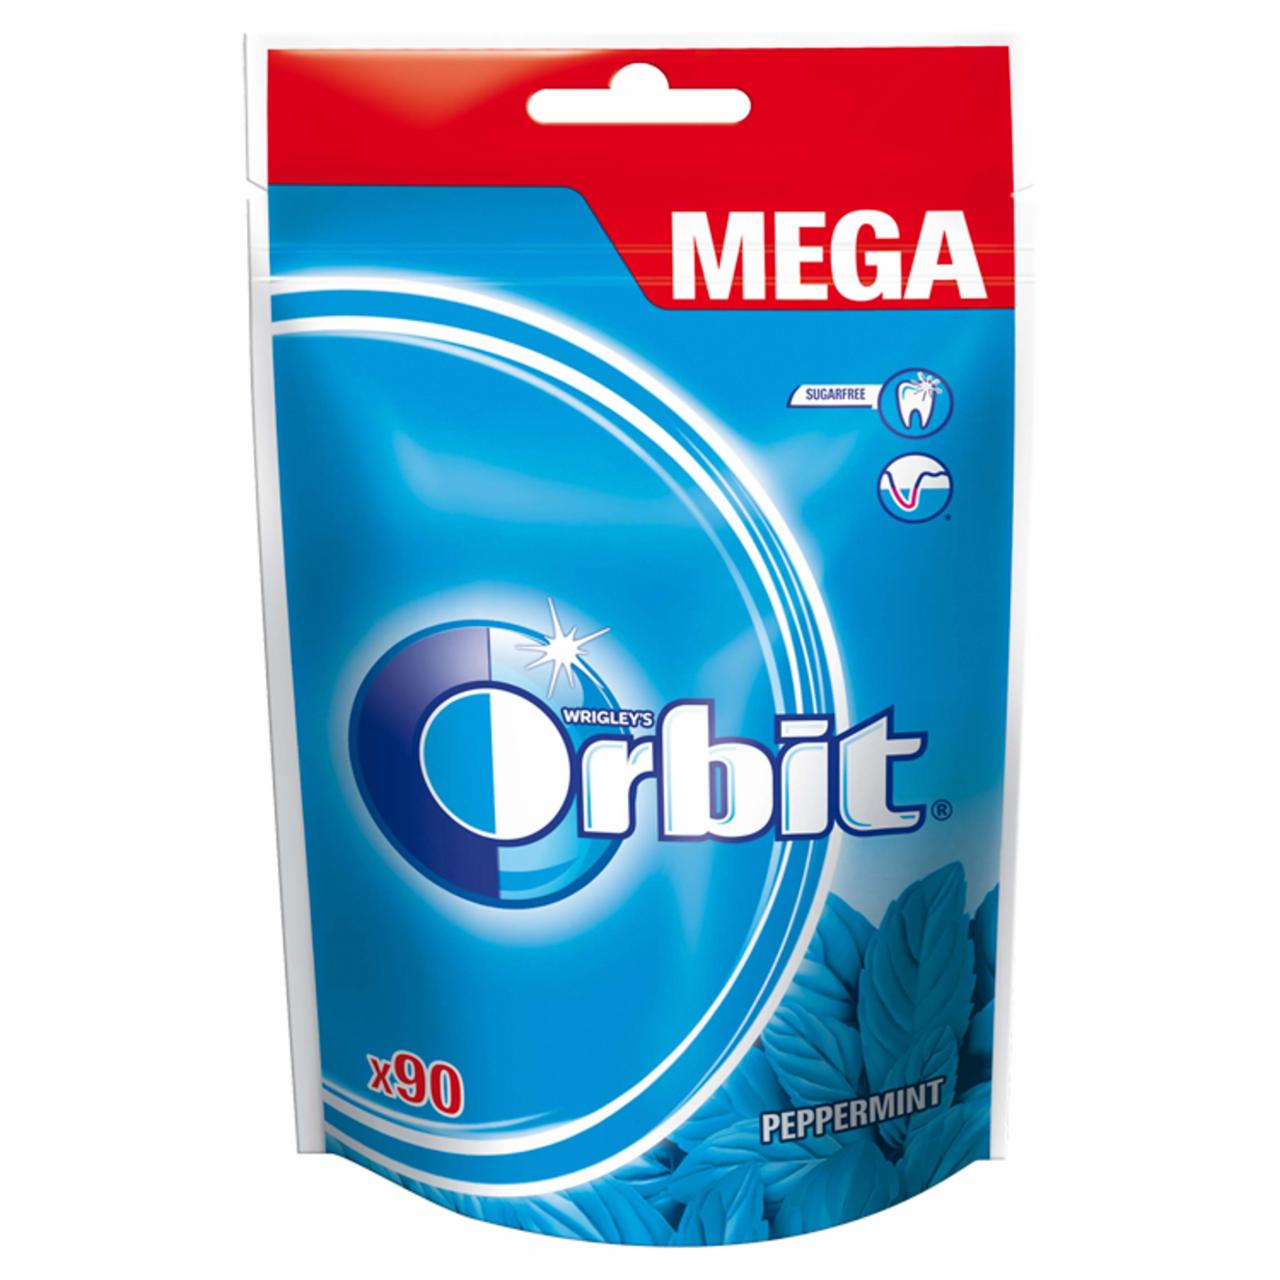 Zdjęcia - Orbit Peppermint Mega Pack Guma do żucia bez cukru 126 g (90 drażetki)